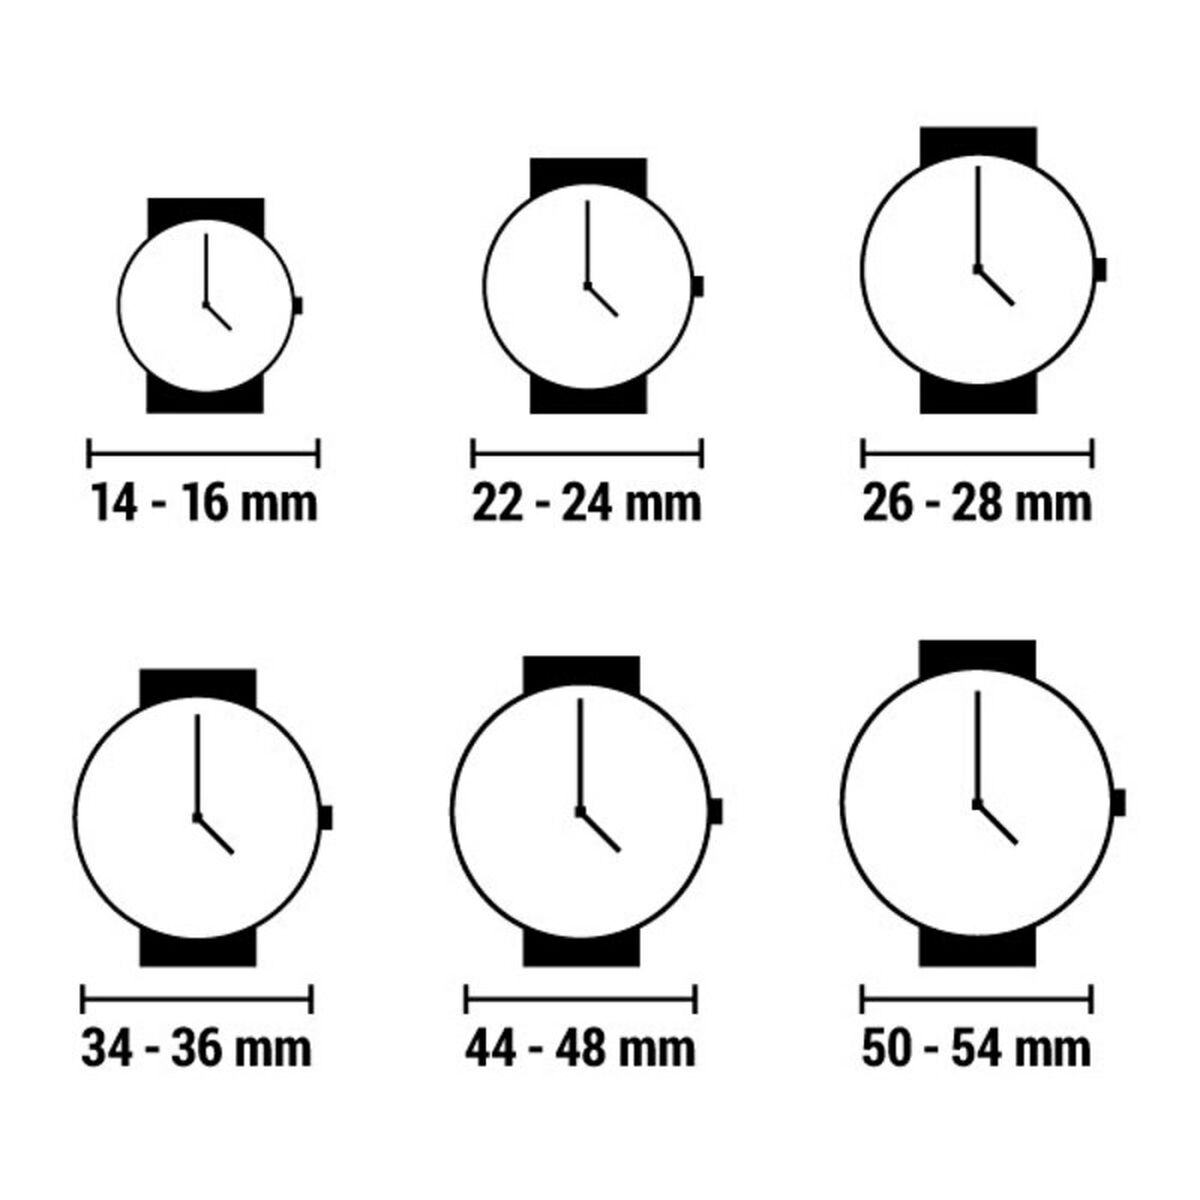 Horloge Dames Time Force TF2572L (Ø 30 mm)